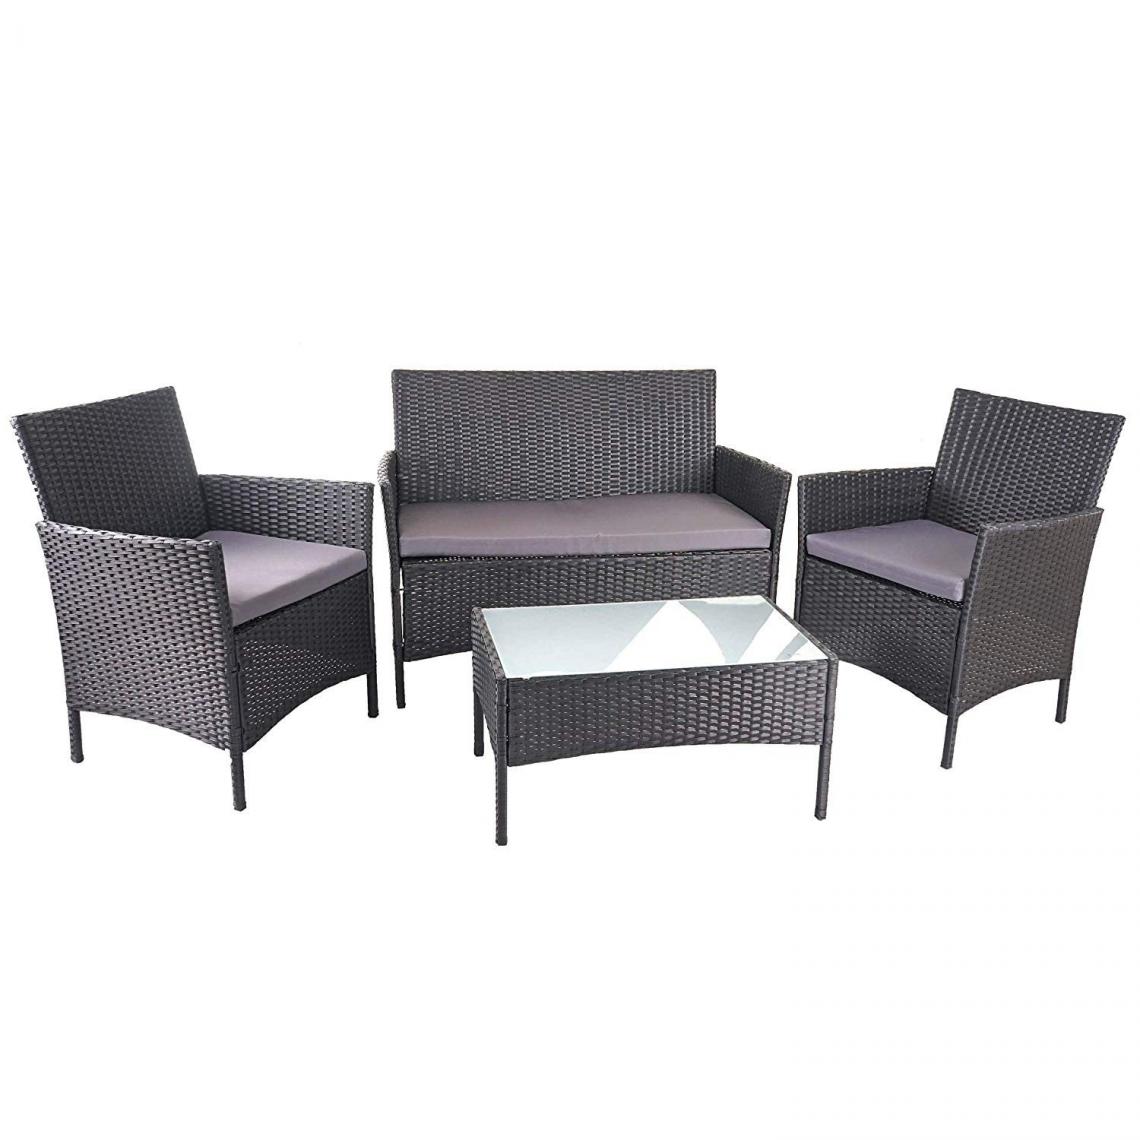 Decoshop26 - Salon de jardin avec fauteuils banc et table en poly-rotin noir et coussin anthracite MDJ04149 - Ensembles canapés et fauteuils